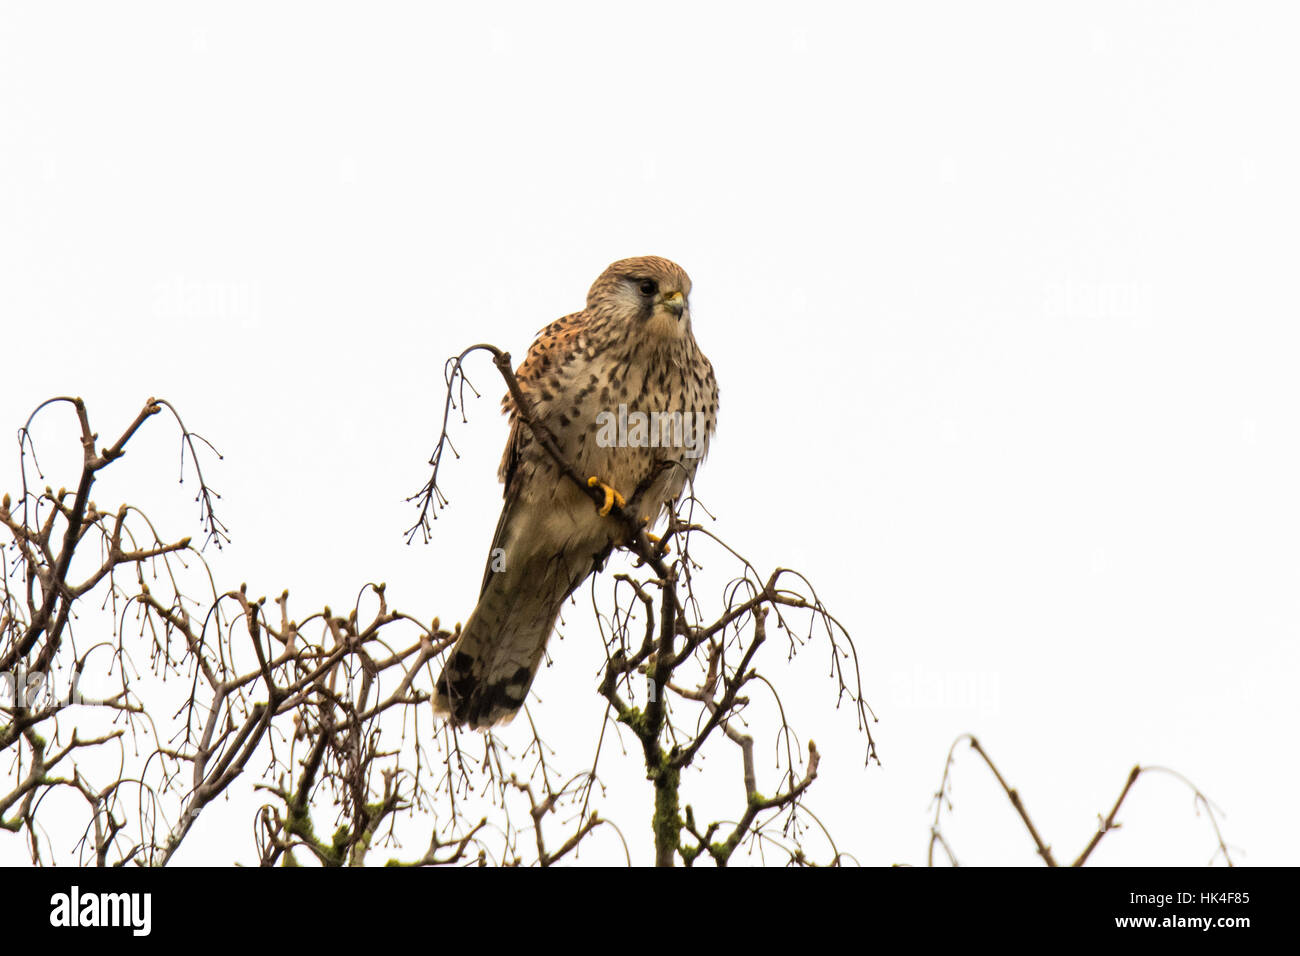 Femme crécerelle (Falco tinnunculus) dans l'arbre. Petit faucon (famille Falconidae) perché dans l'arbre de la recherche de proies de petits mammifères Banque D'Images